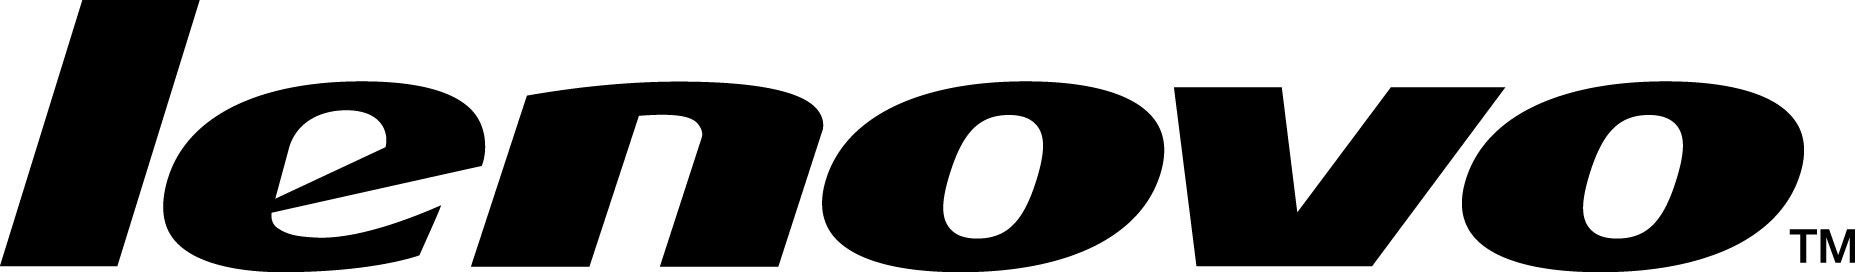 Lenovo Logo